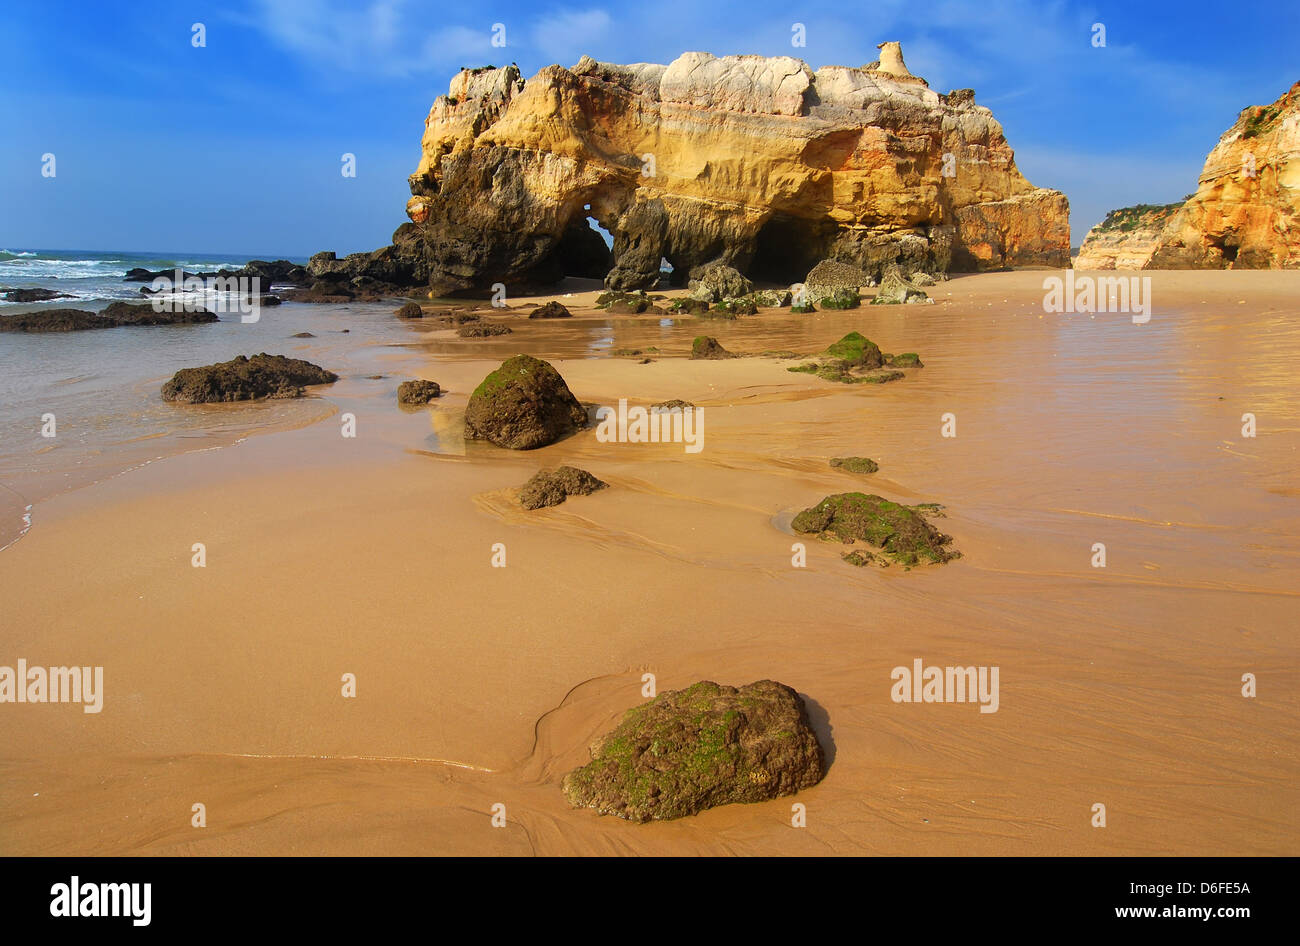 Praia da Rocha est la plage et zone bâtie sur l'océan Atlantique en Algarve, sud du Portugal. Banque D'Images